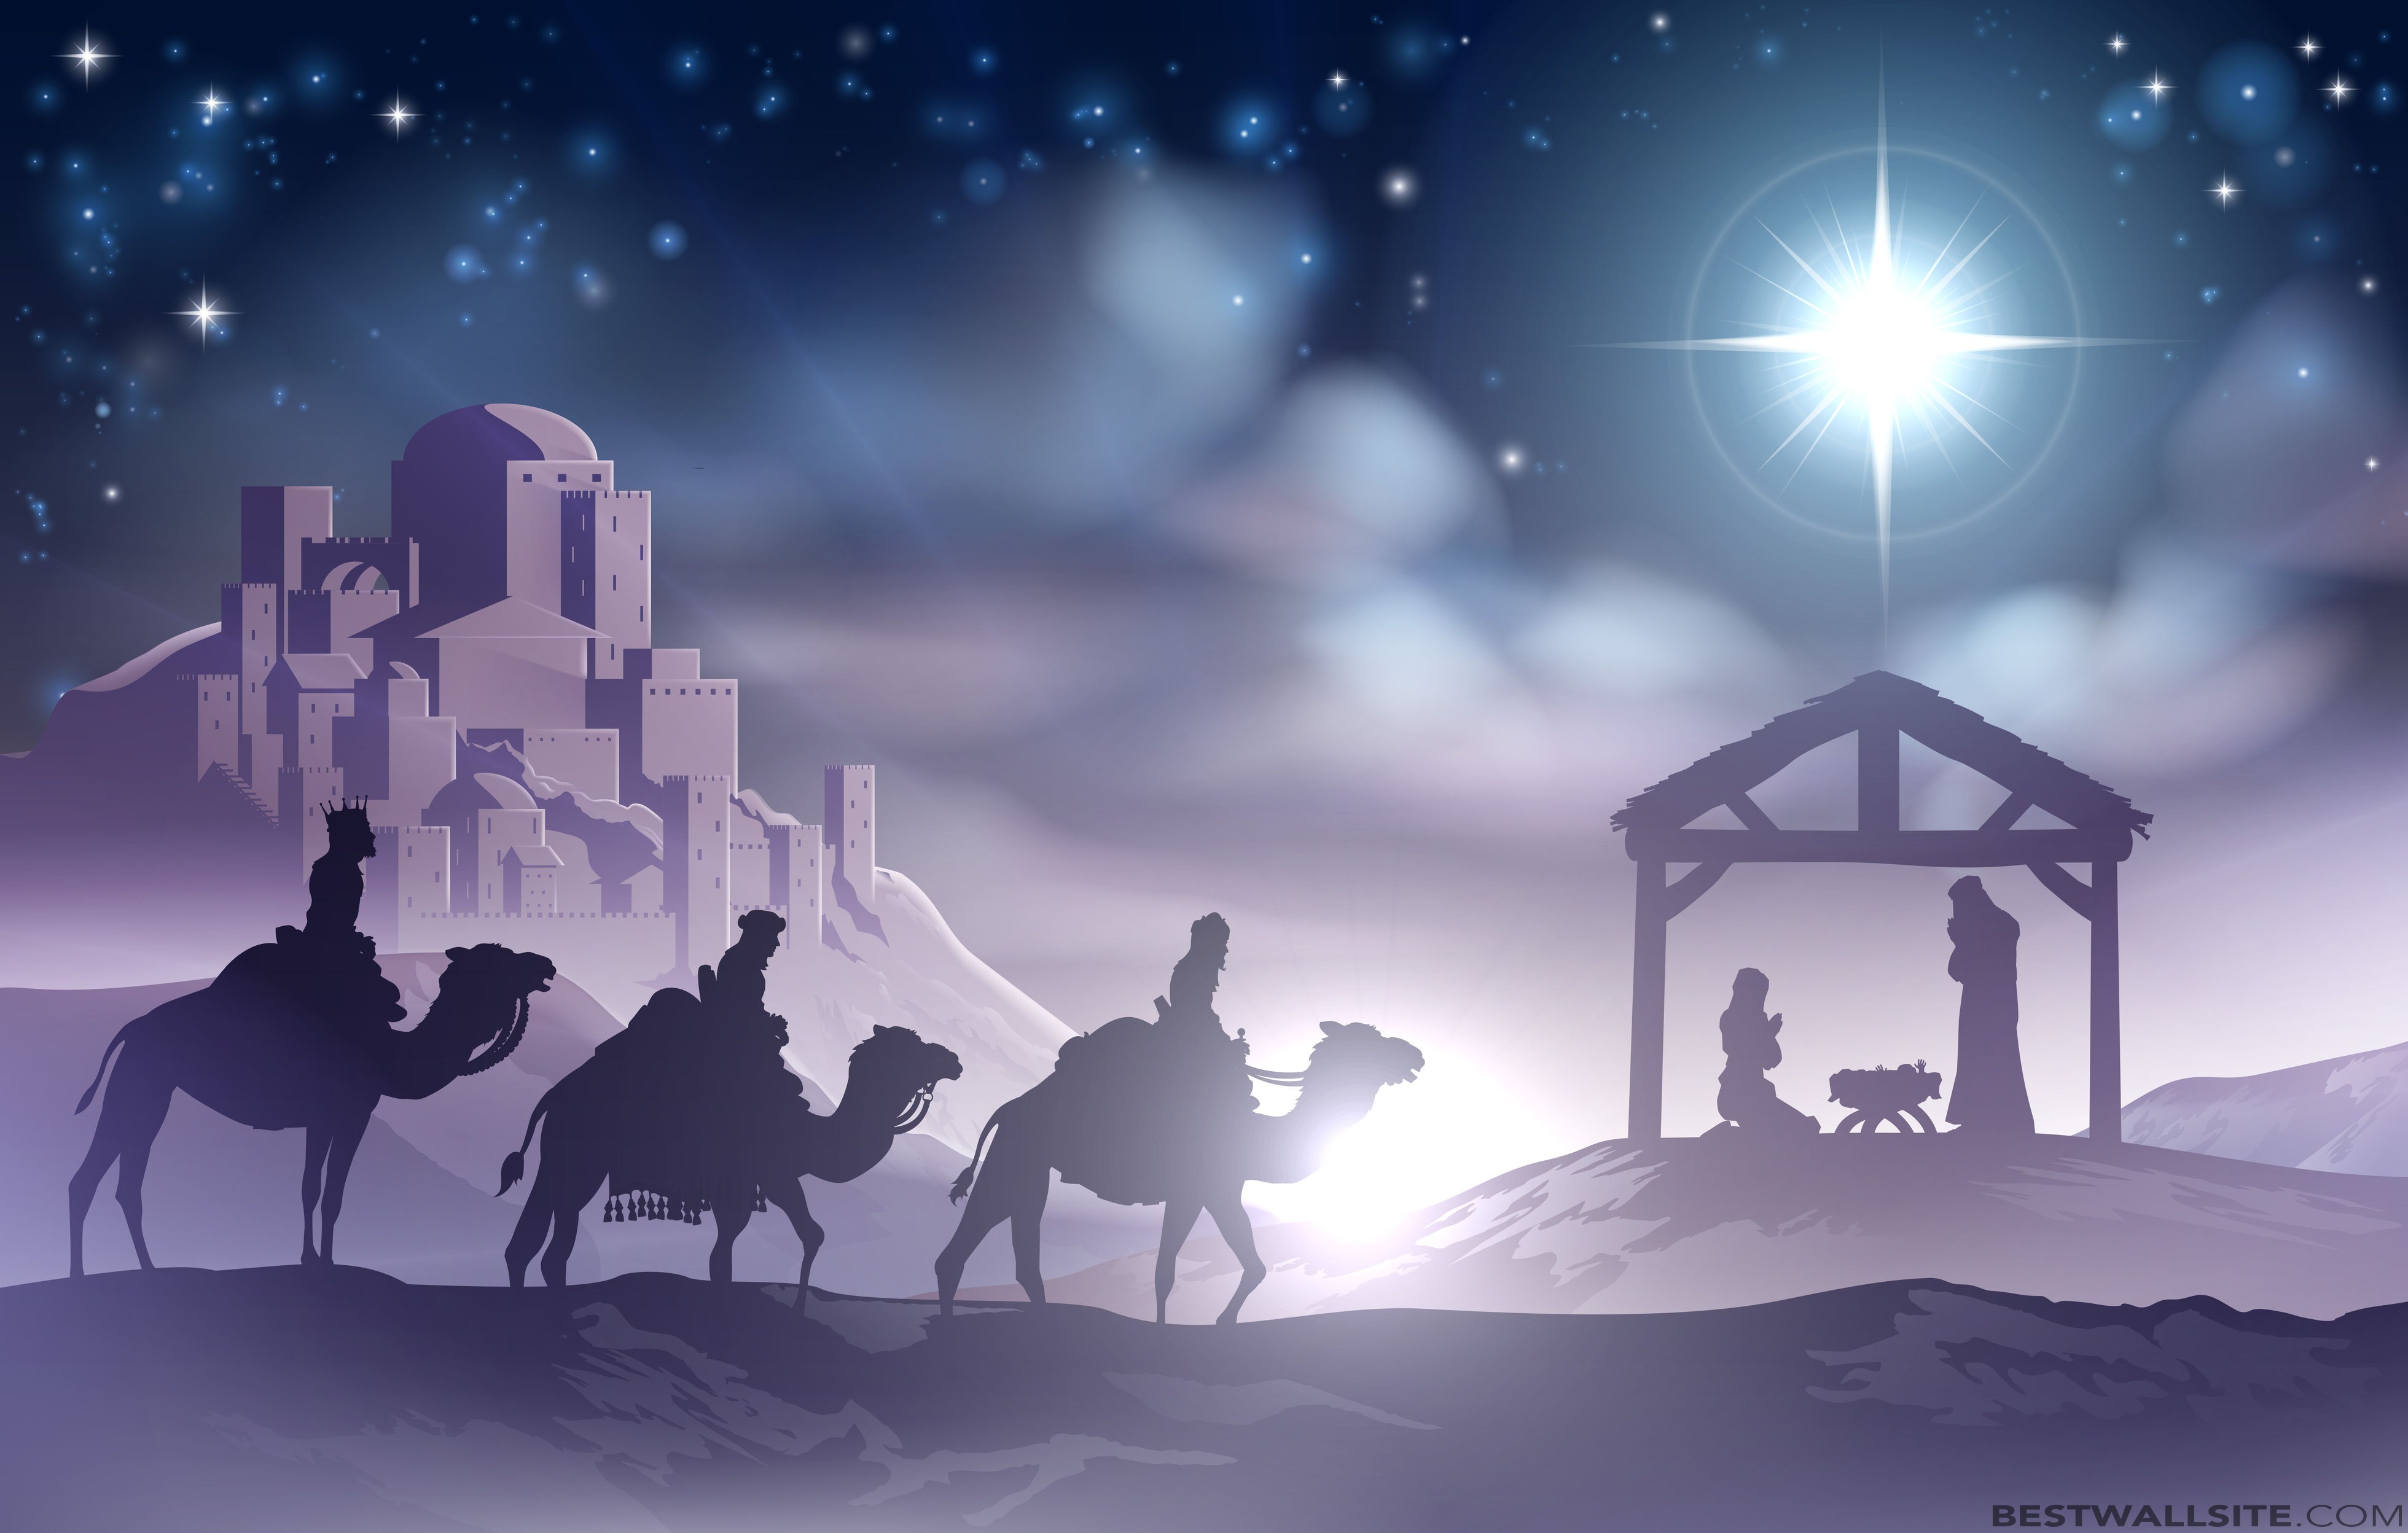 Christmas Eve Nativity Scene Bestwallsite